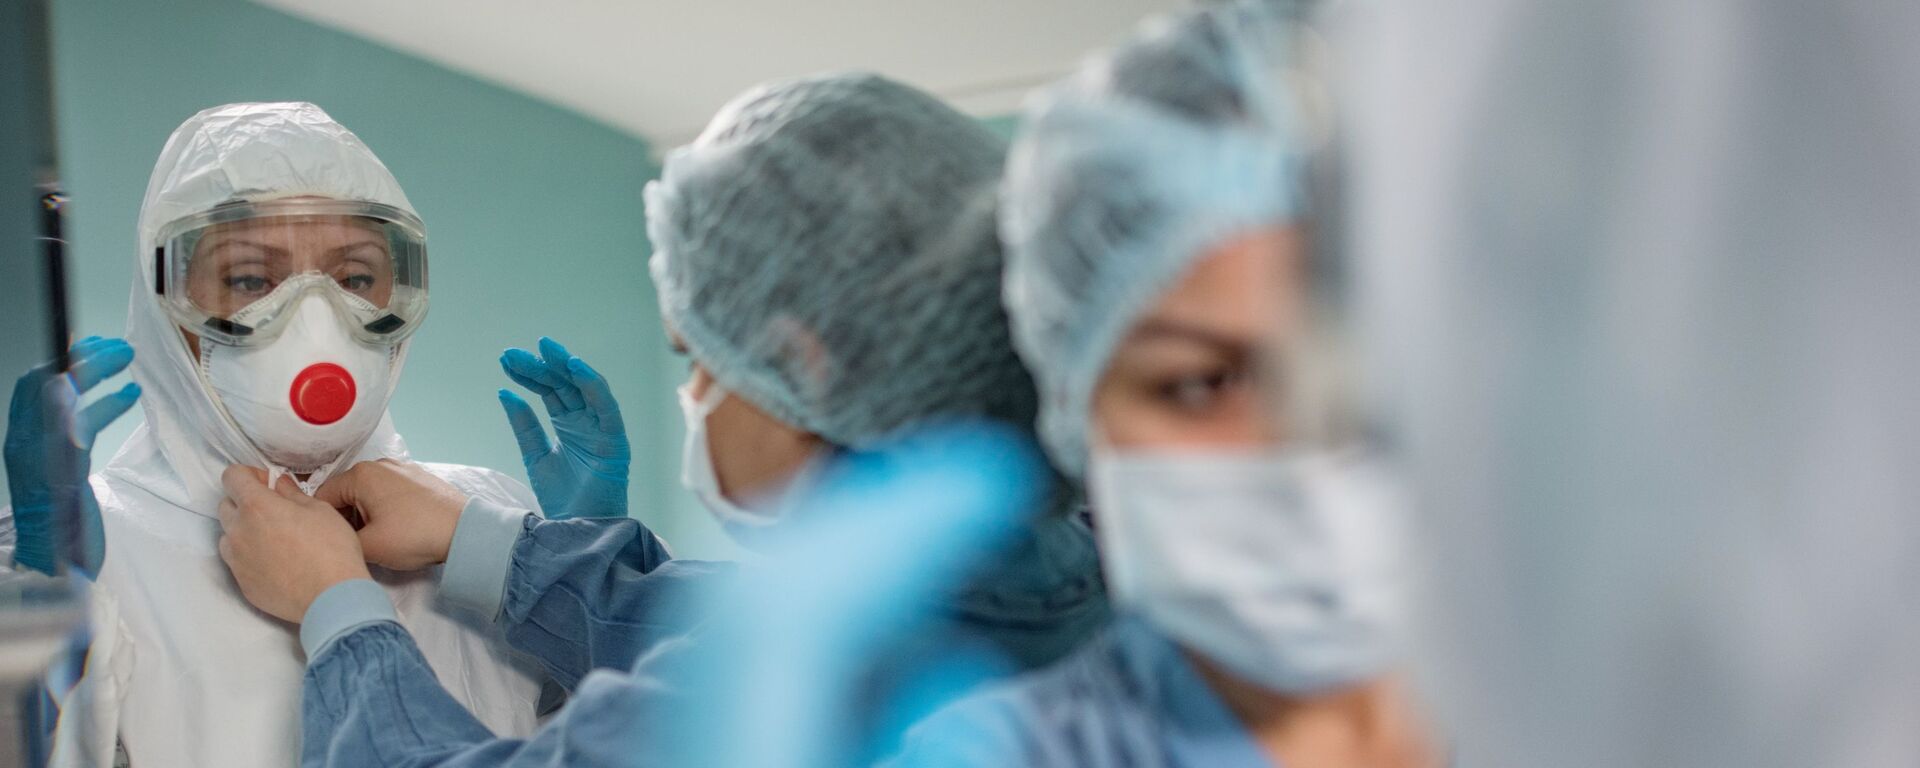 Медицинские работники надевают защитные костюмы и маски для работы с больными с коронавирусной инфекцией - Sputnik Латвия, 1920, 04.02.2021